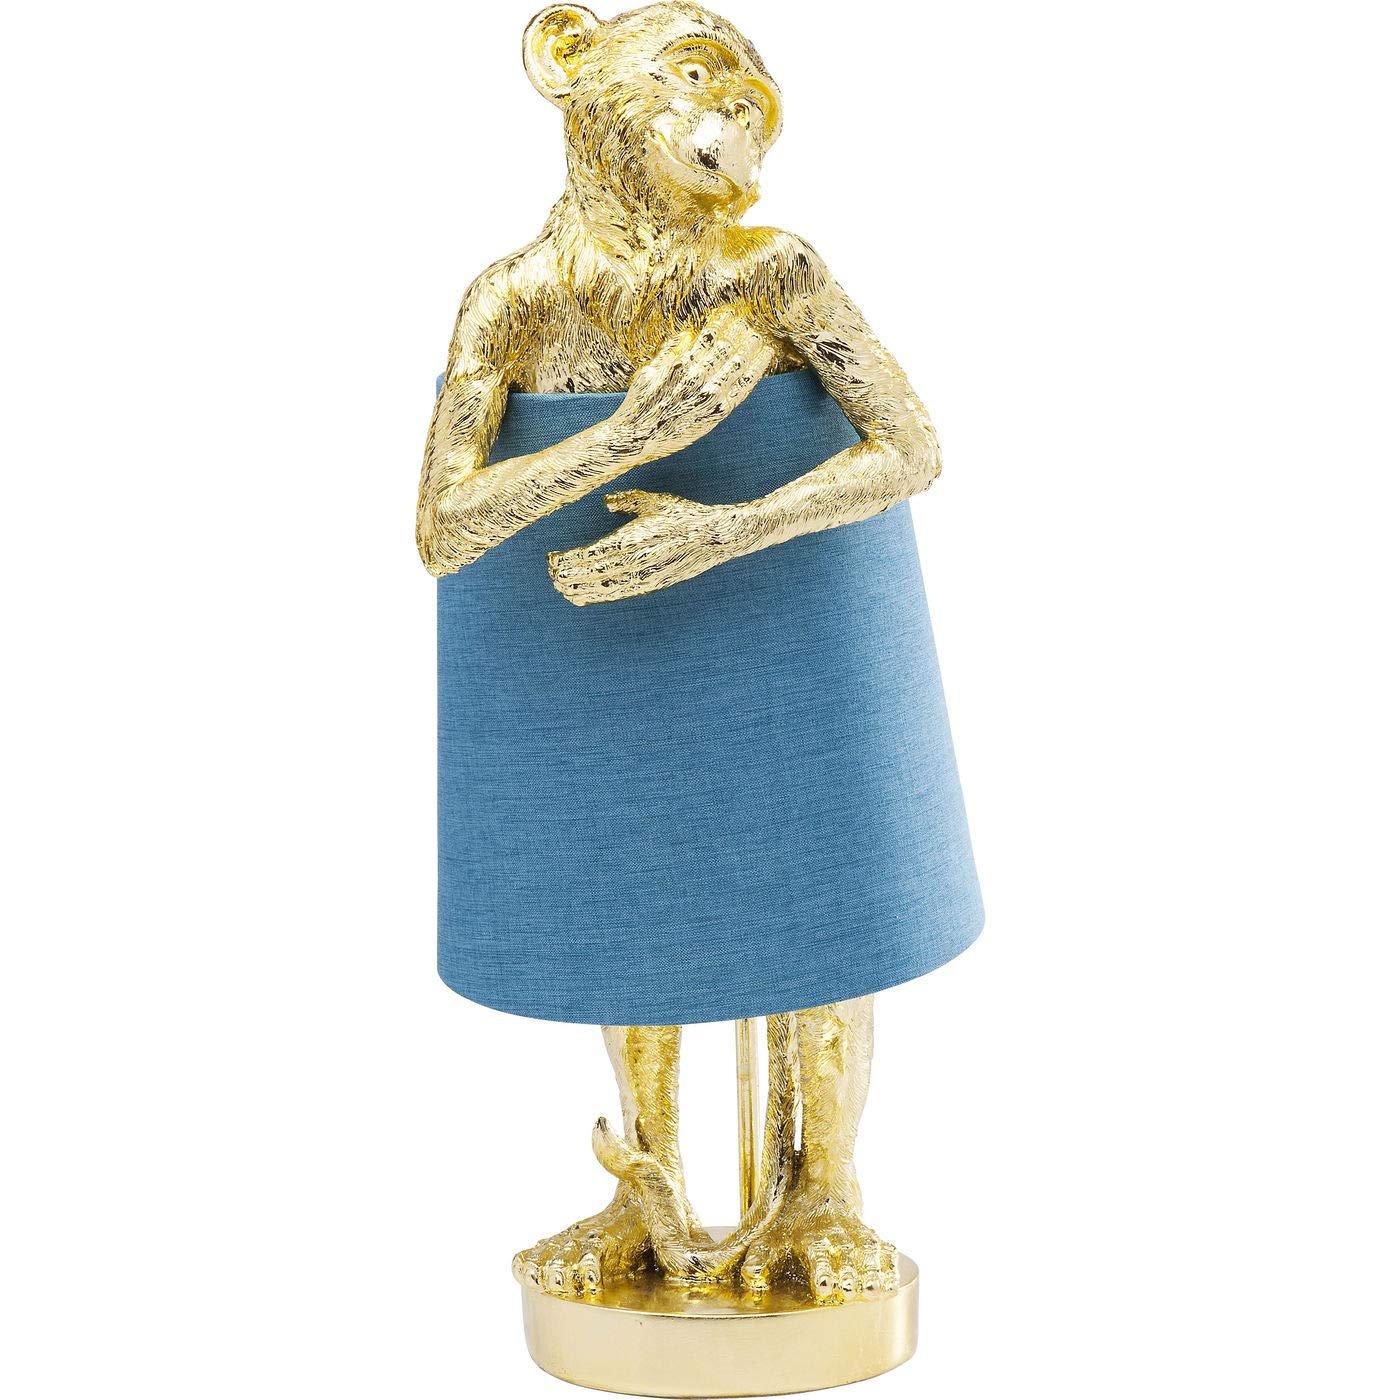 Kare Design Tischleuchte Animal Monkey, Gold/Blau, 58x23x29cm